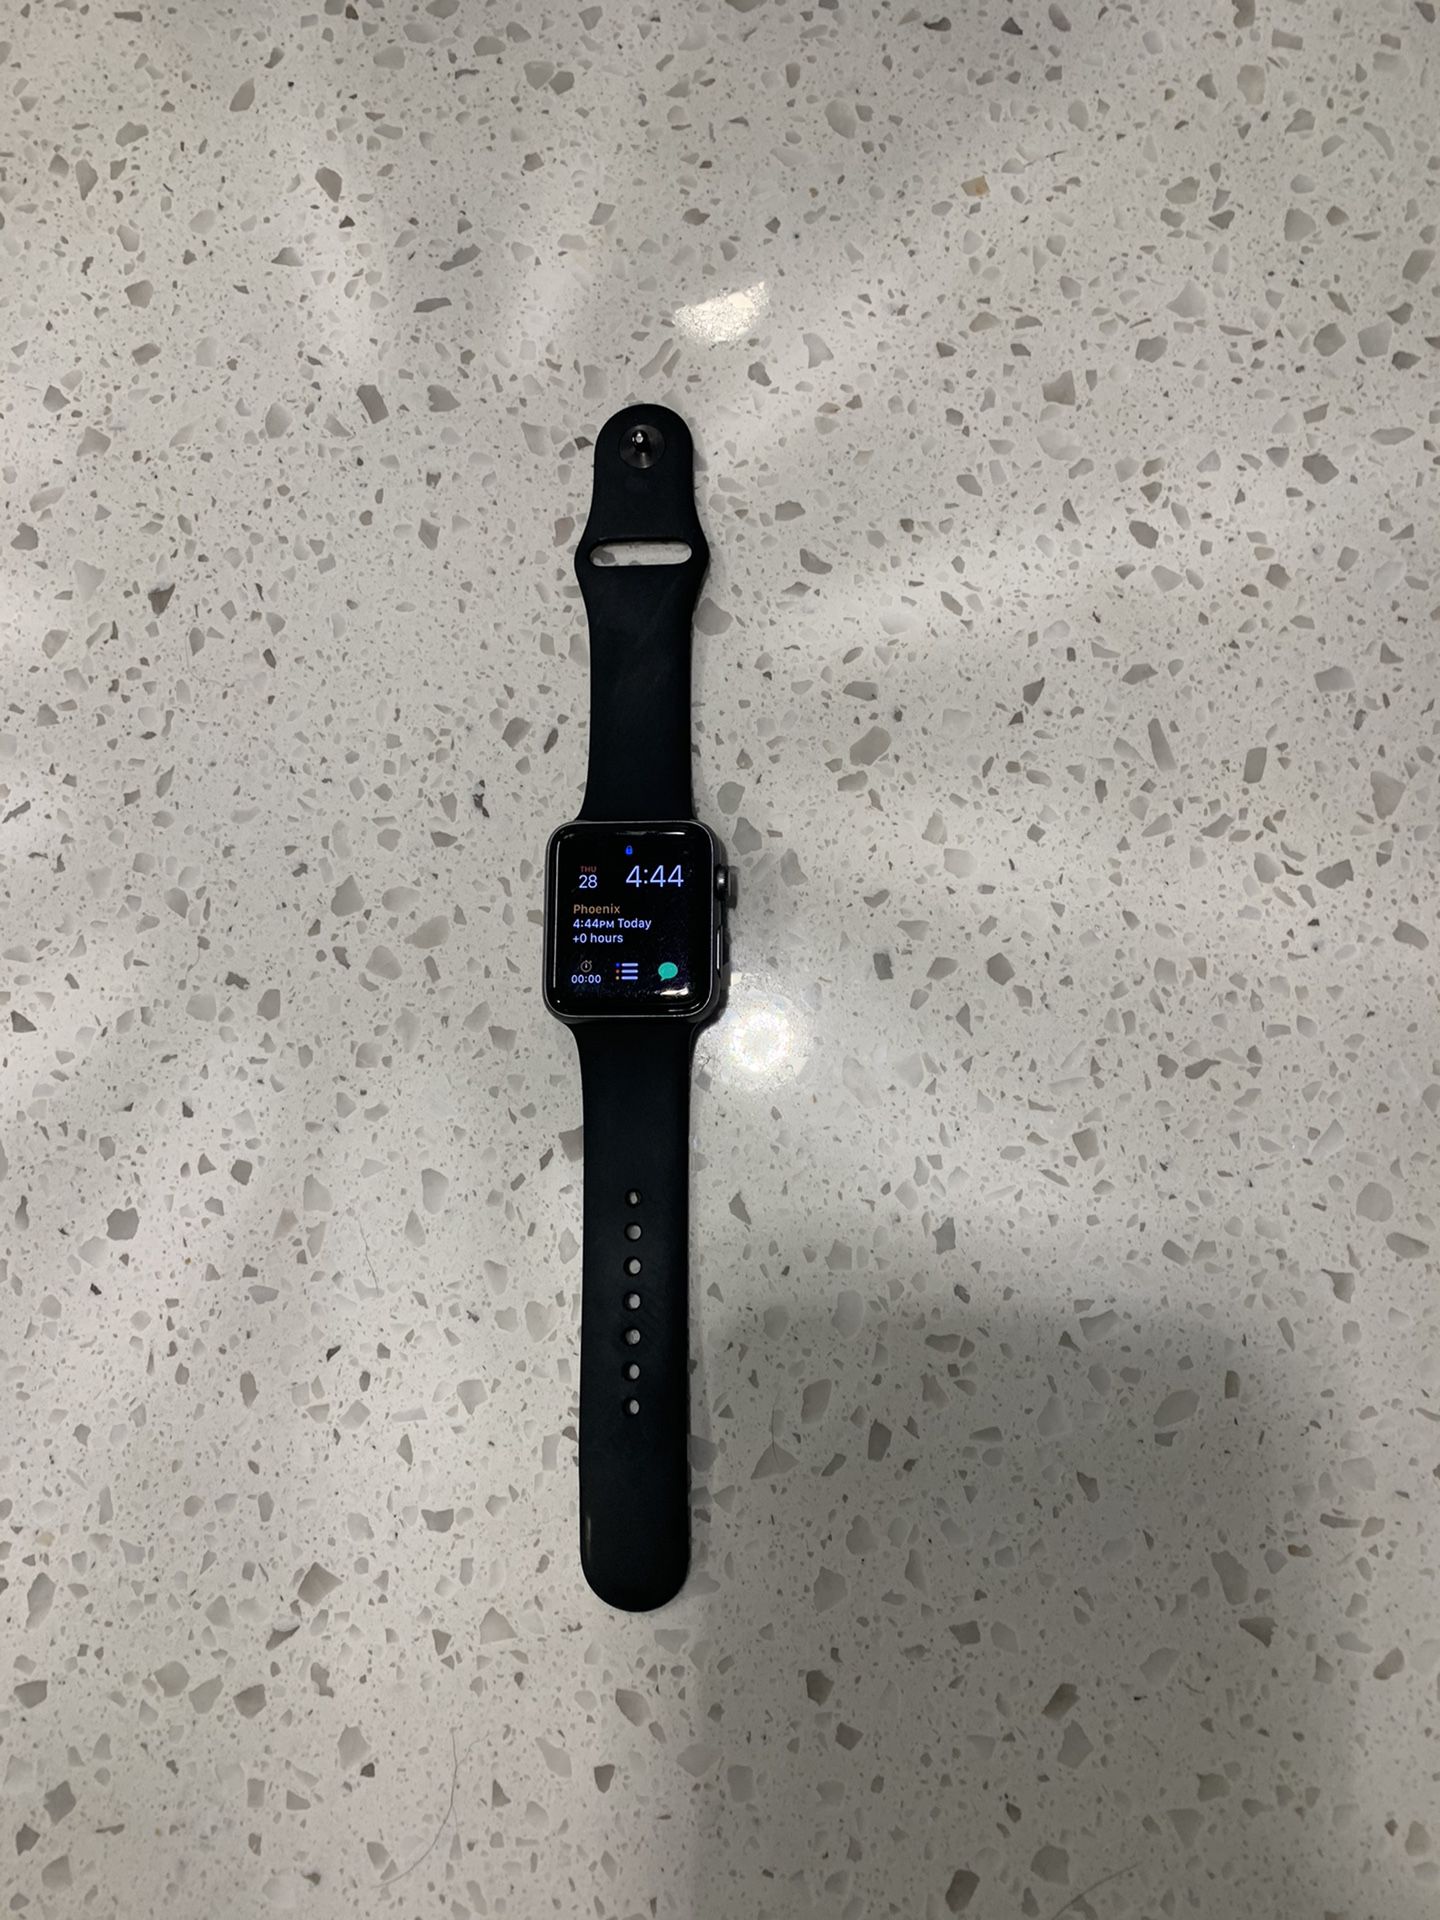 Apple Watch Series 3 (42mm) W/ GPS